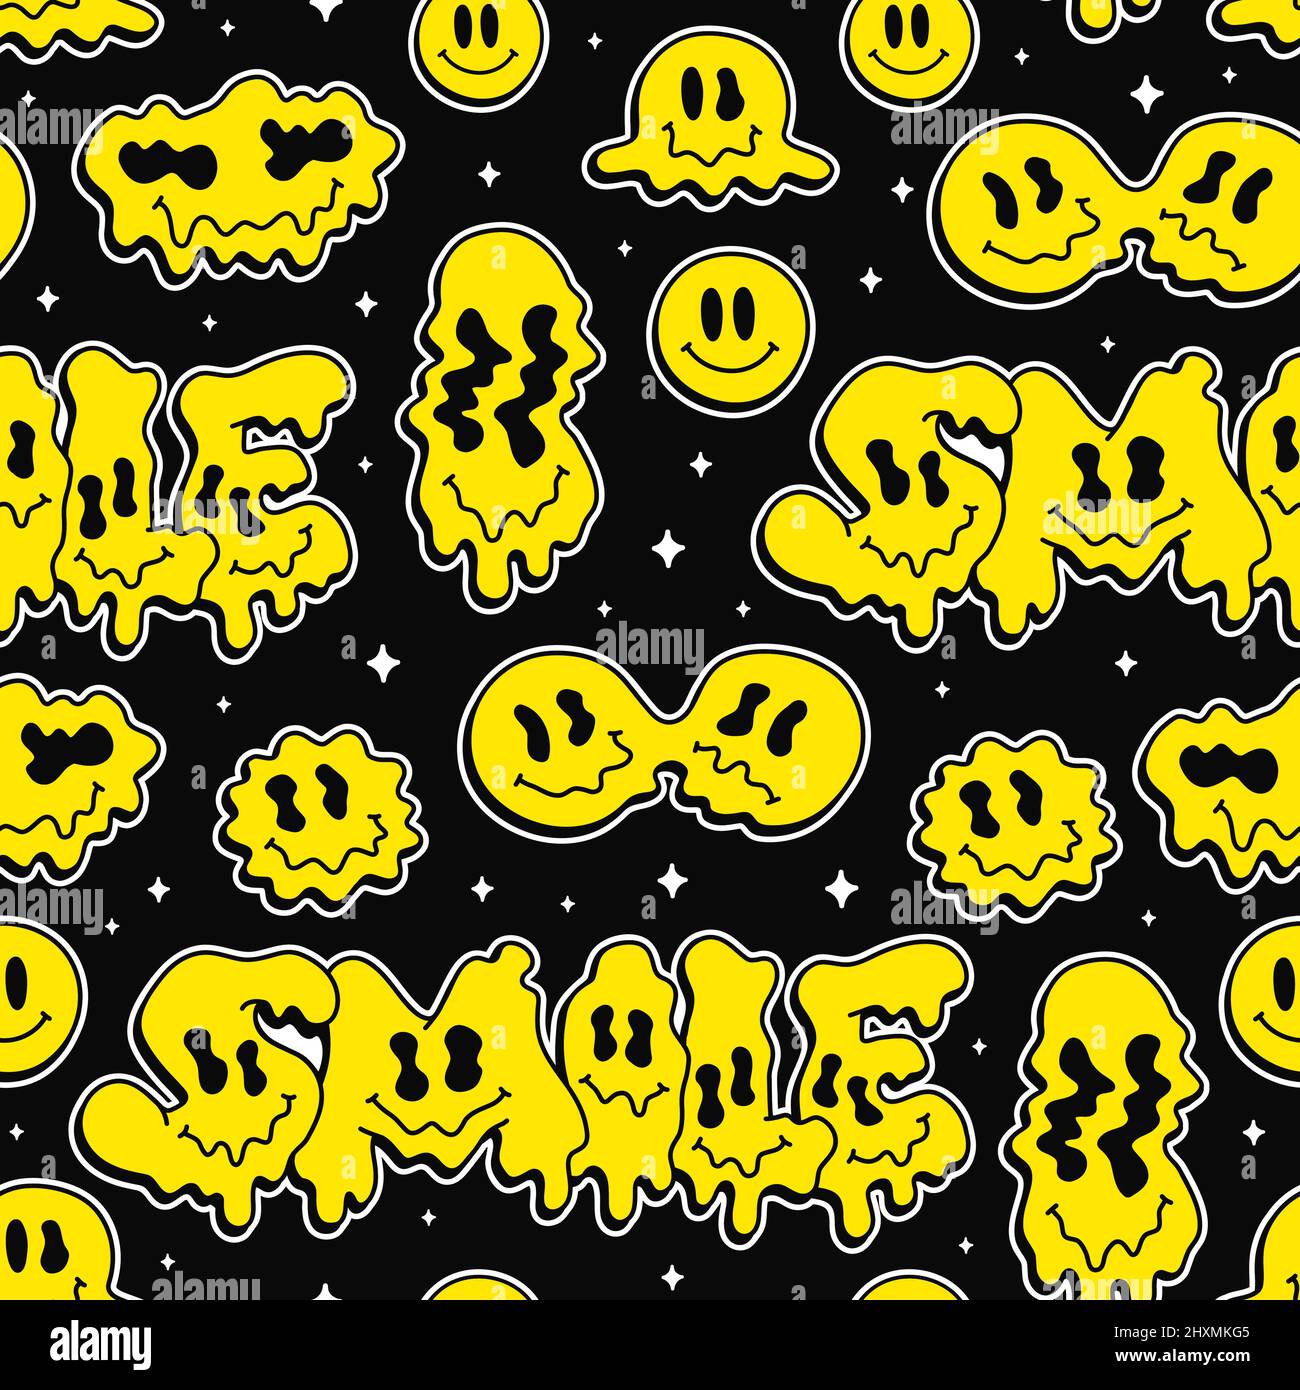 Lustige Schmelze Warp Lächeln Gesichter, psychedelische Emoji nahtlose pattern.Vector cool Cartoon Charakter illustrationSmile Gesichter Grafik, schmelzen, Säure, Drogen, 60s, 70s, 90s tripy nahtlose Muster Tapete Druckkunst Stock Vektor